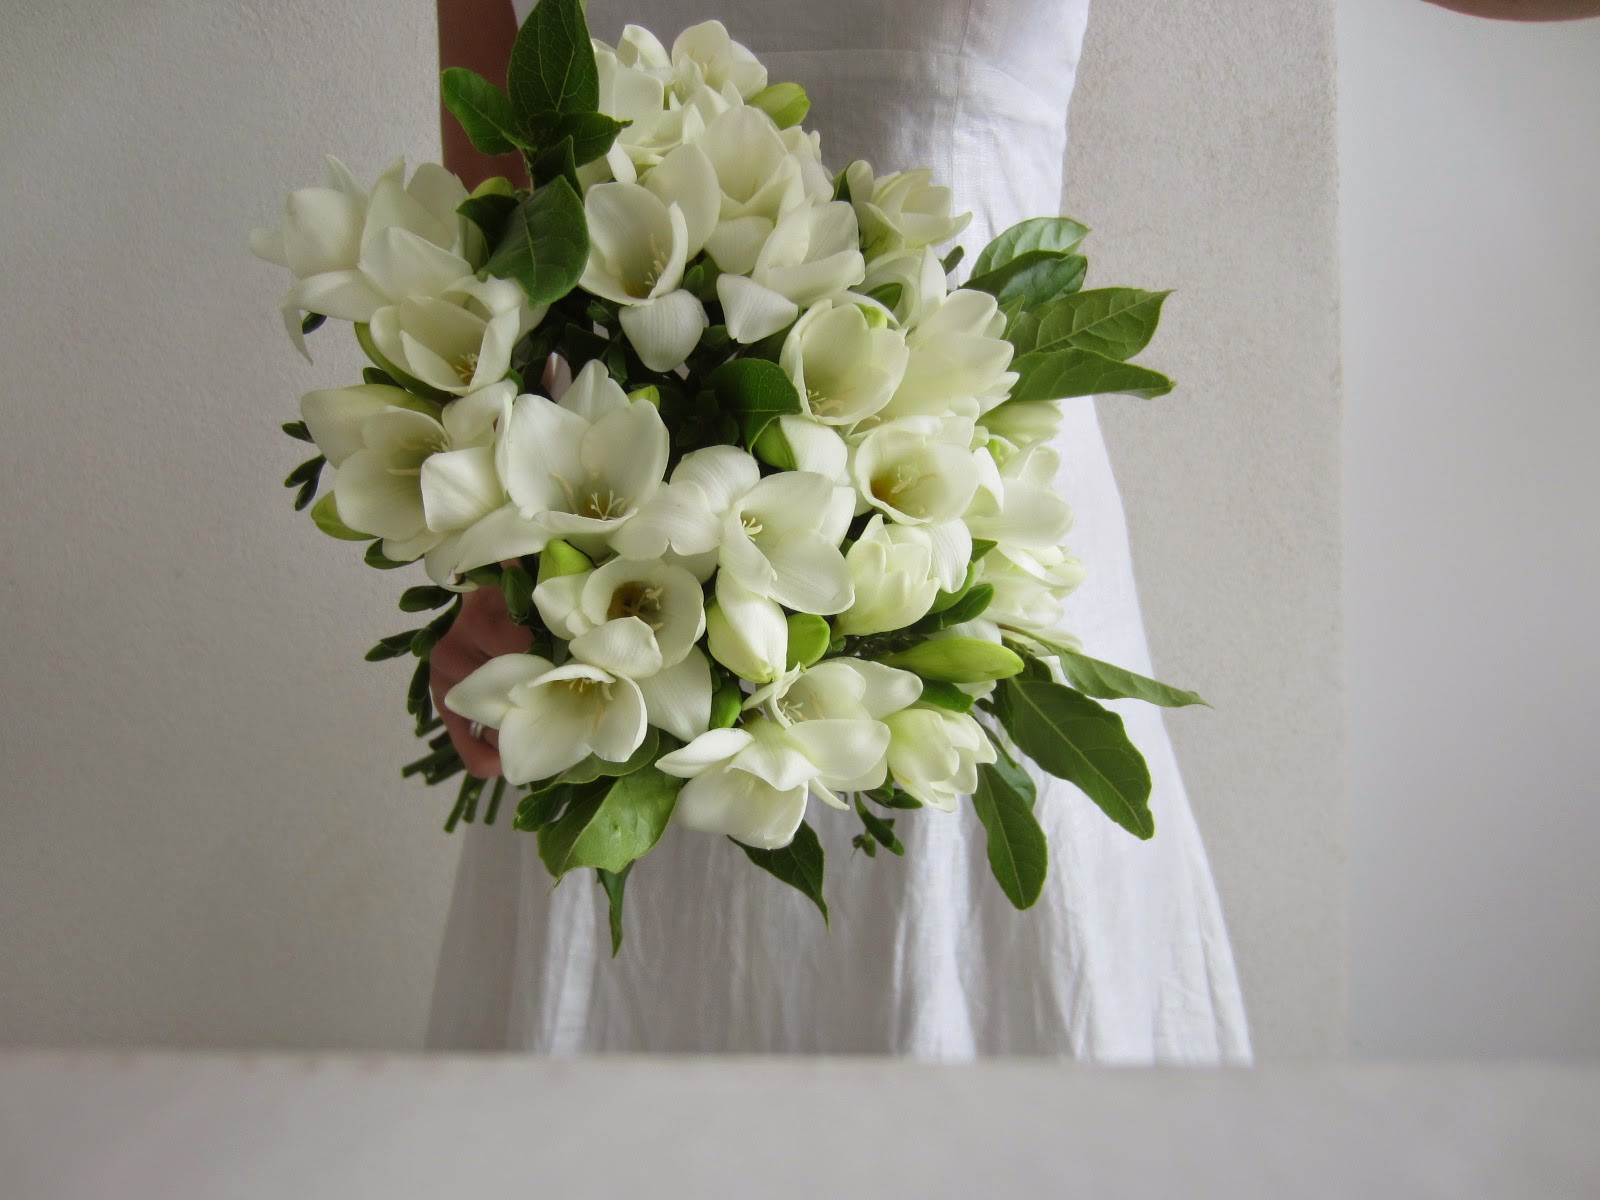 La petite boutique de fleurs - Fleuriste mariage Lyon: Bouquet de mariée  freesias